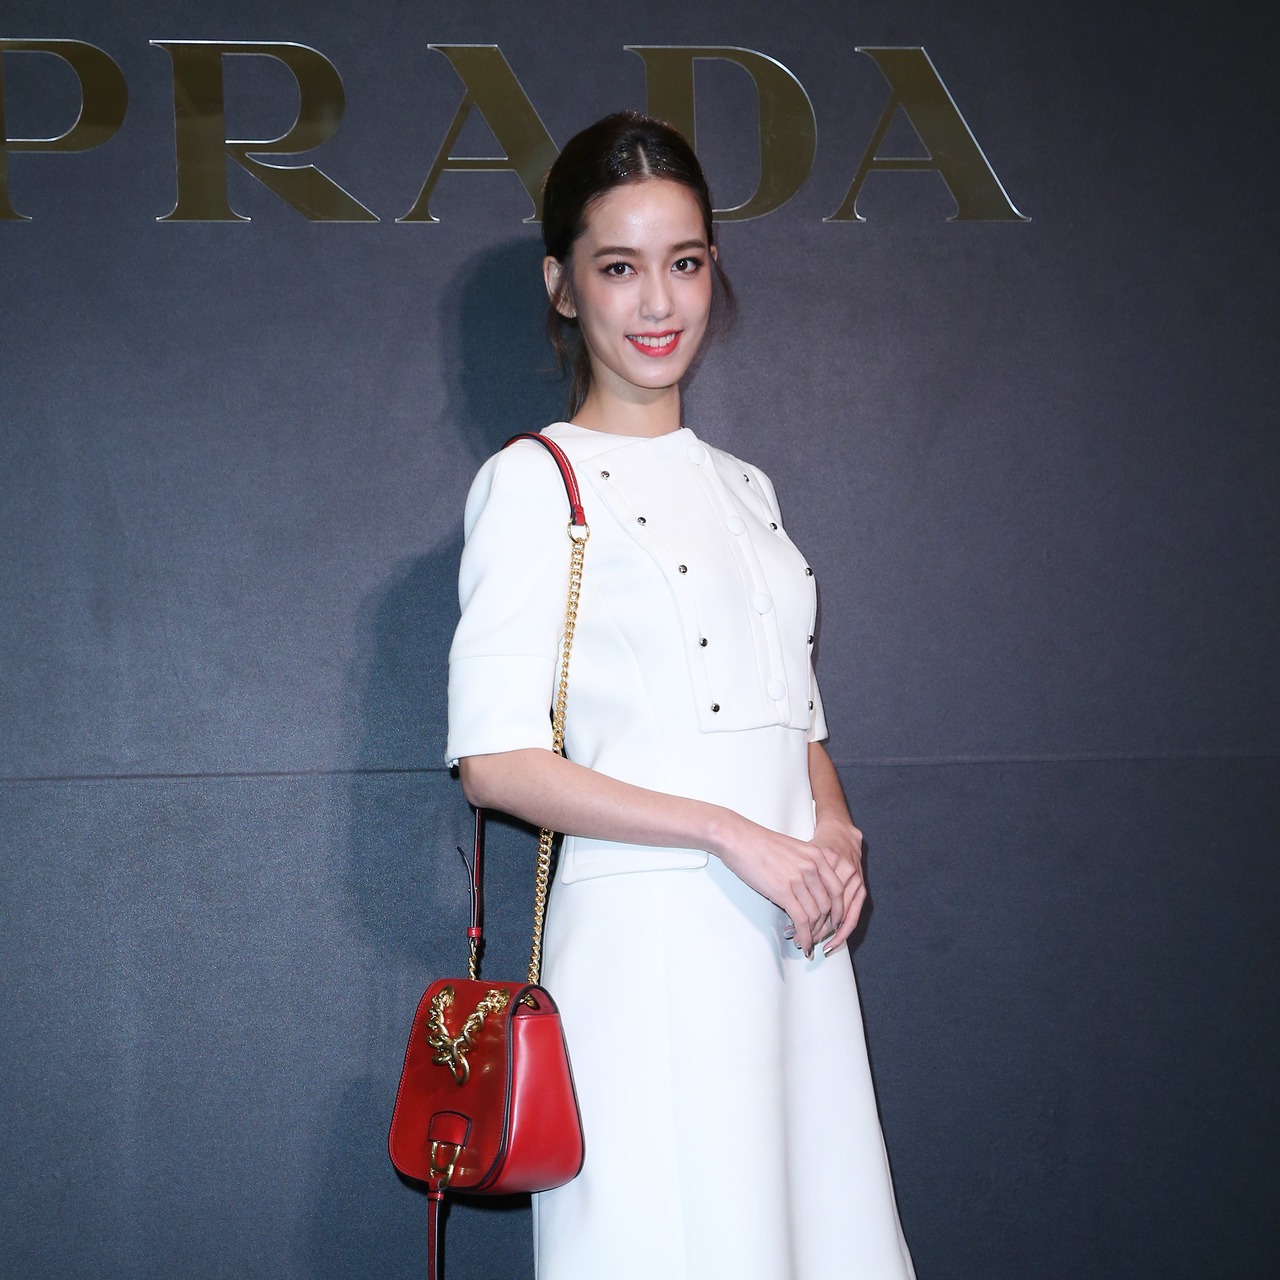 時尚圈盛事 陳庭妮美出席PRADA慈善派對